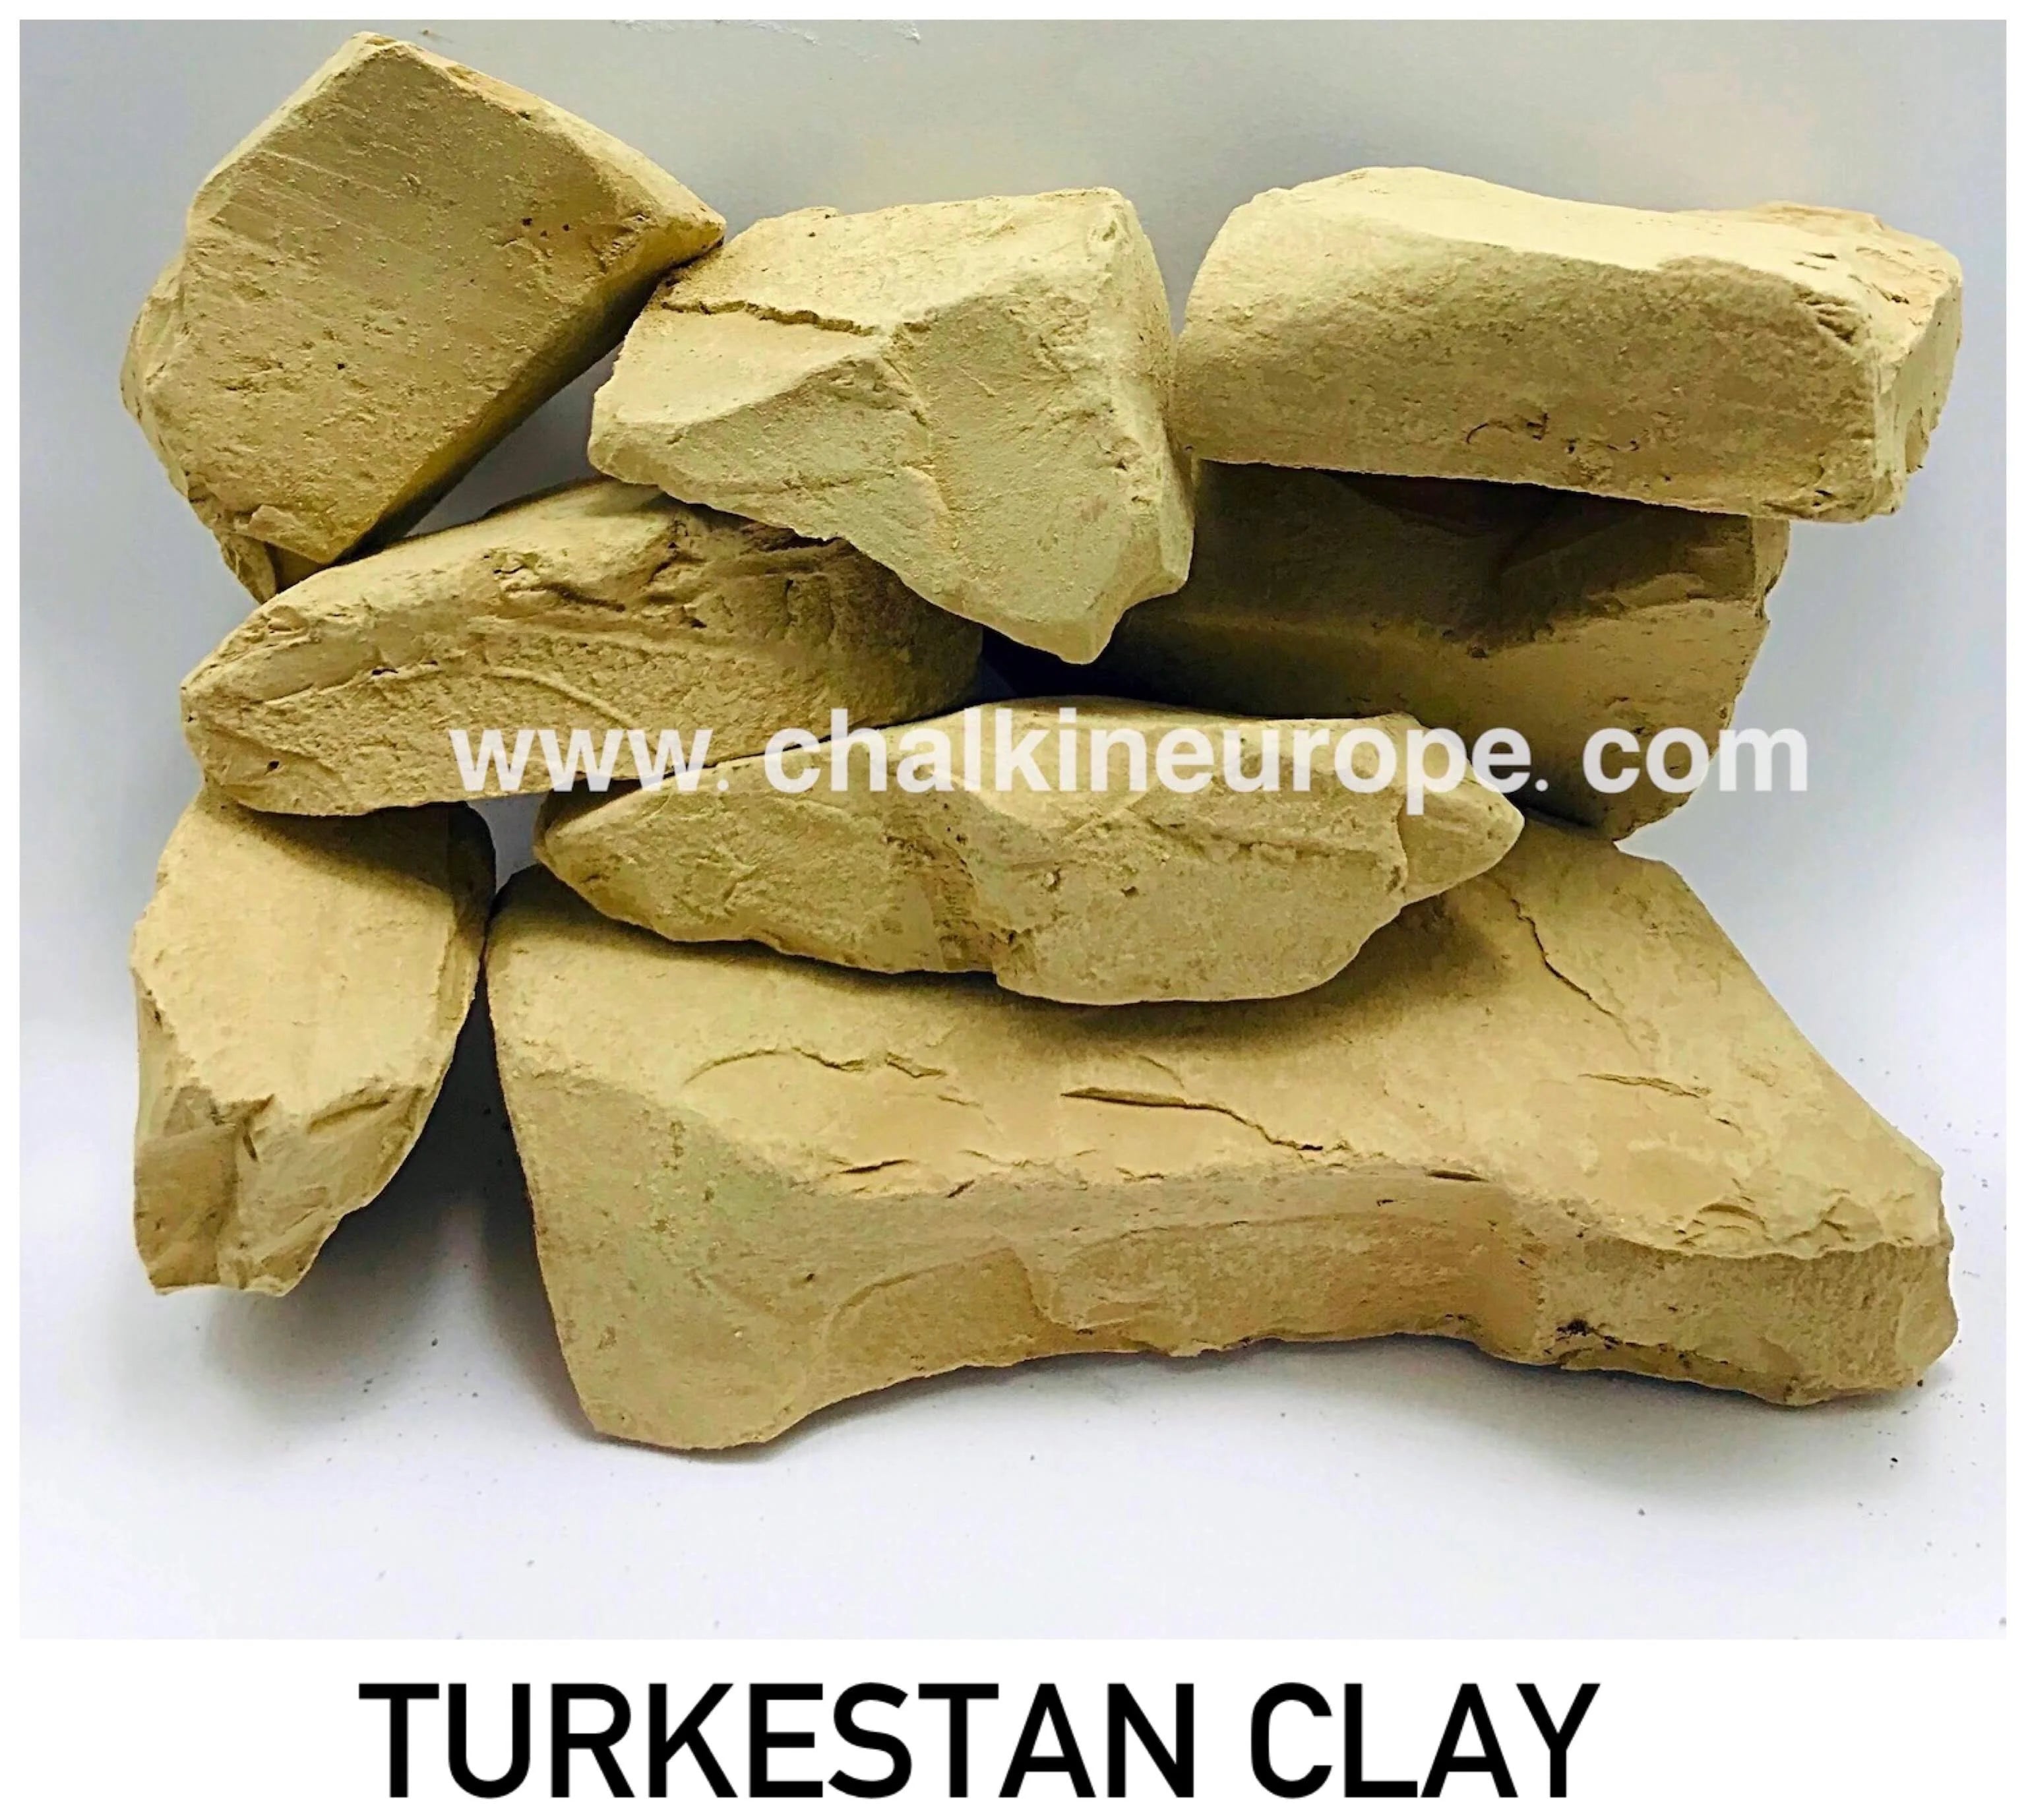 Tastiest clay - Chalkineurope